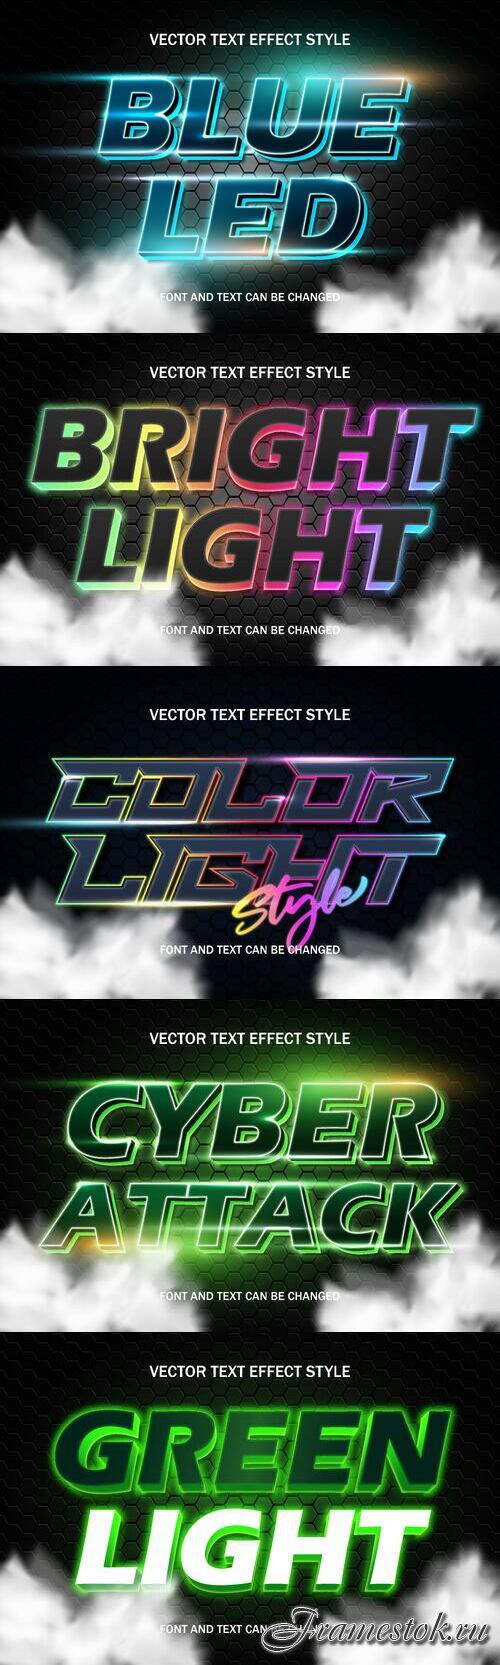 Vector 3d text editable, text effect font design
 set vol 80 